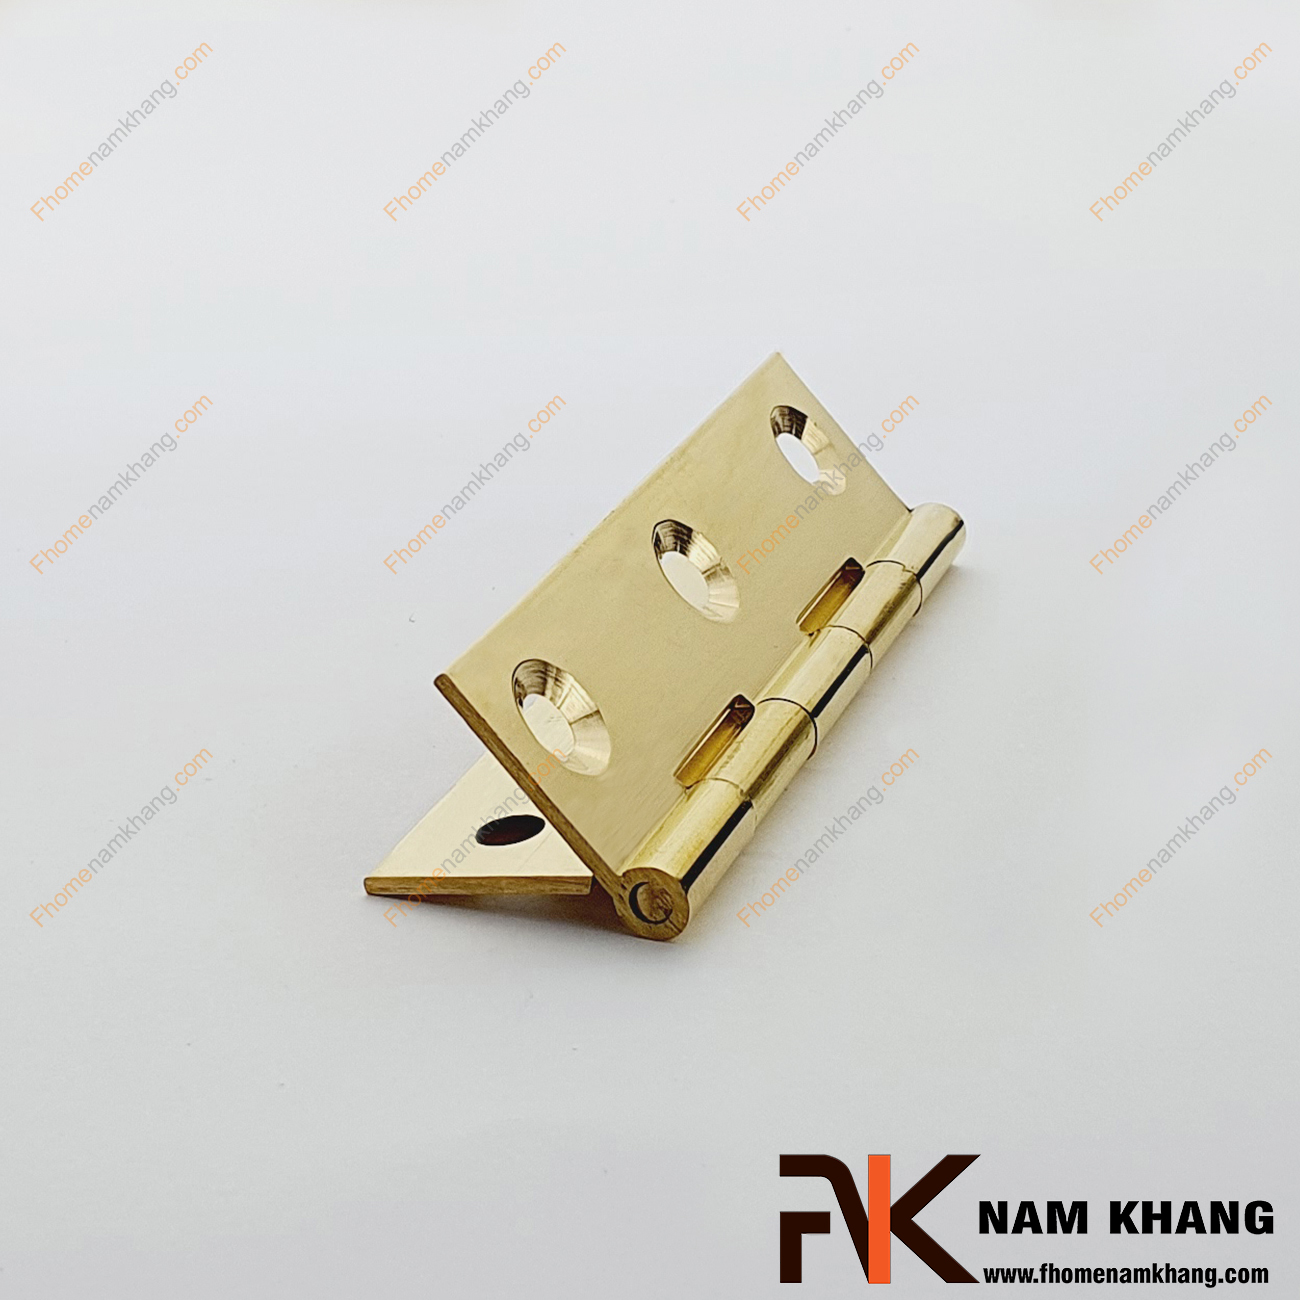 Bản lề lá tủ bằng đồng cao cấp NK470-8FDO là mẫu bản lề size nhỏ chuyên dùng cho các dạng tủ kệ nhỏ, cánh cửa tủ, cánh hộp gỗ, cánh thùng gỗ và hộp quà tặng.